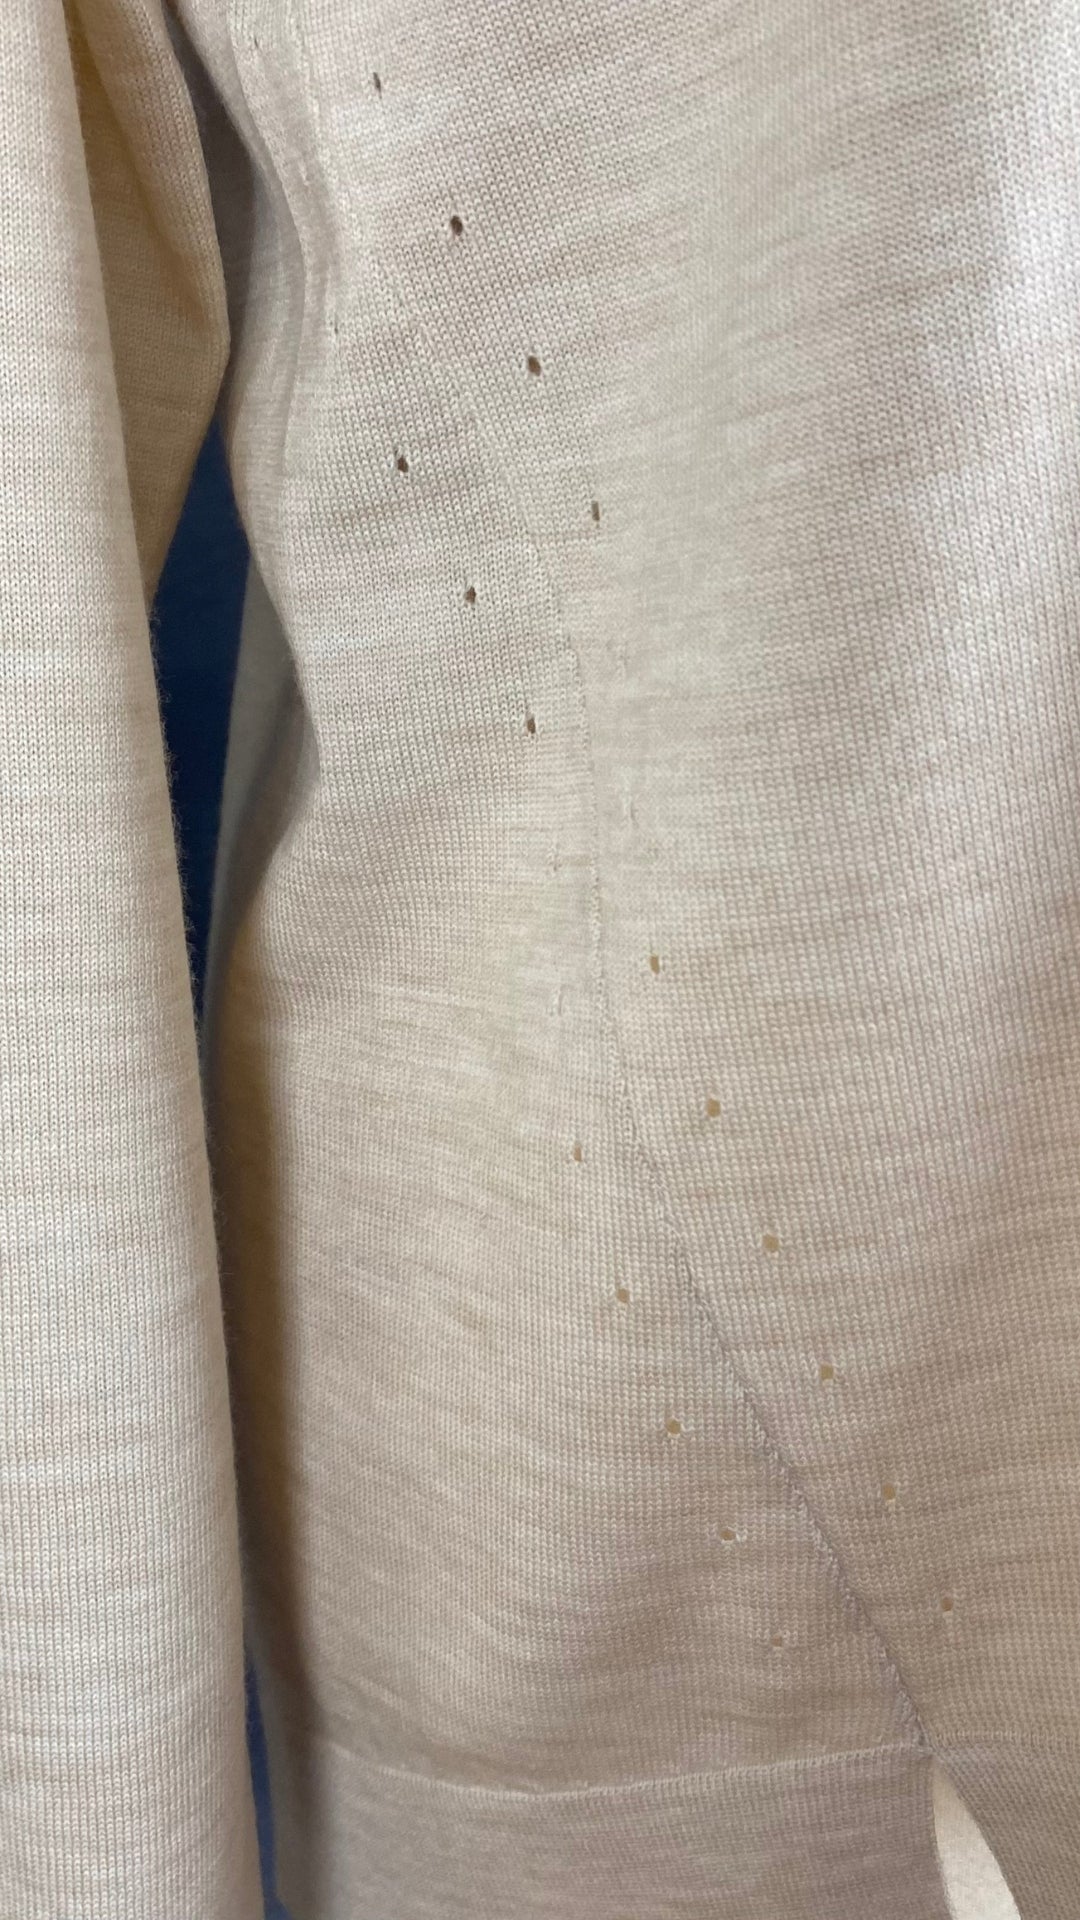 Chandail tricot avoine mélange de laine mérinos et coton, marque J.Crew, taille small. Vue des détails du tissu.